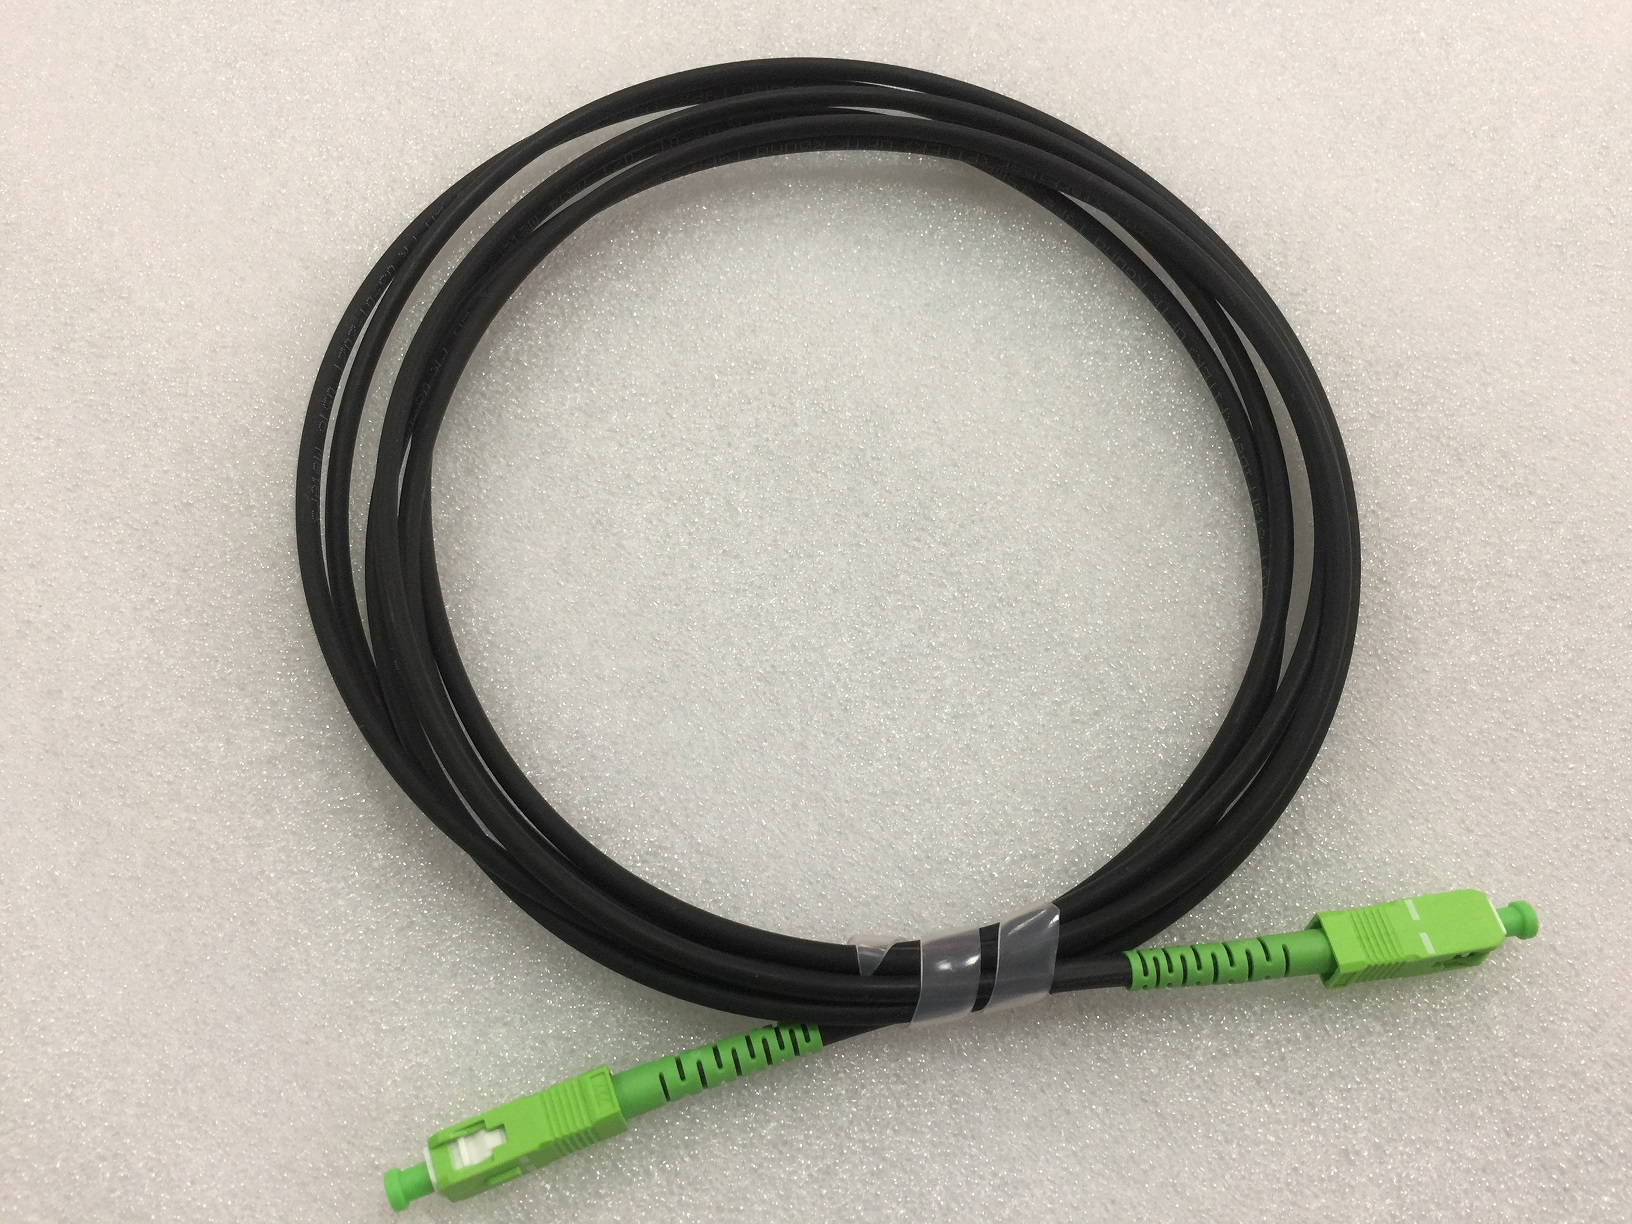 Gestión de cables horizontal de 1U con placa frontal extraíble